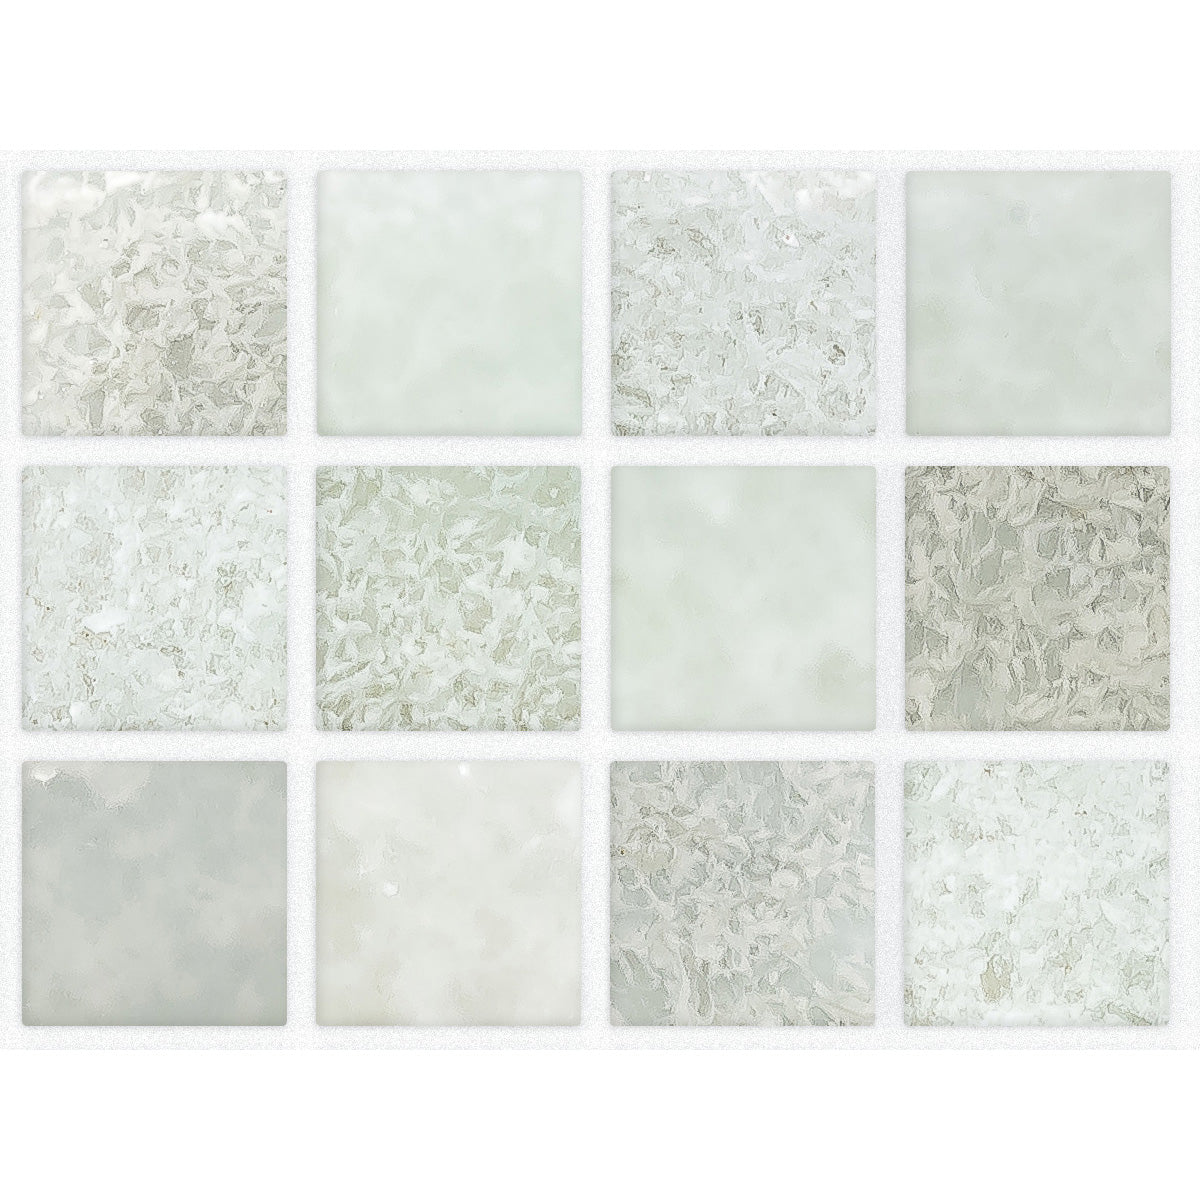 Ceramica - Liquid Glass Wall Tile 1 in. x 1 in. - Niagara Blend